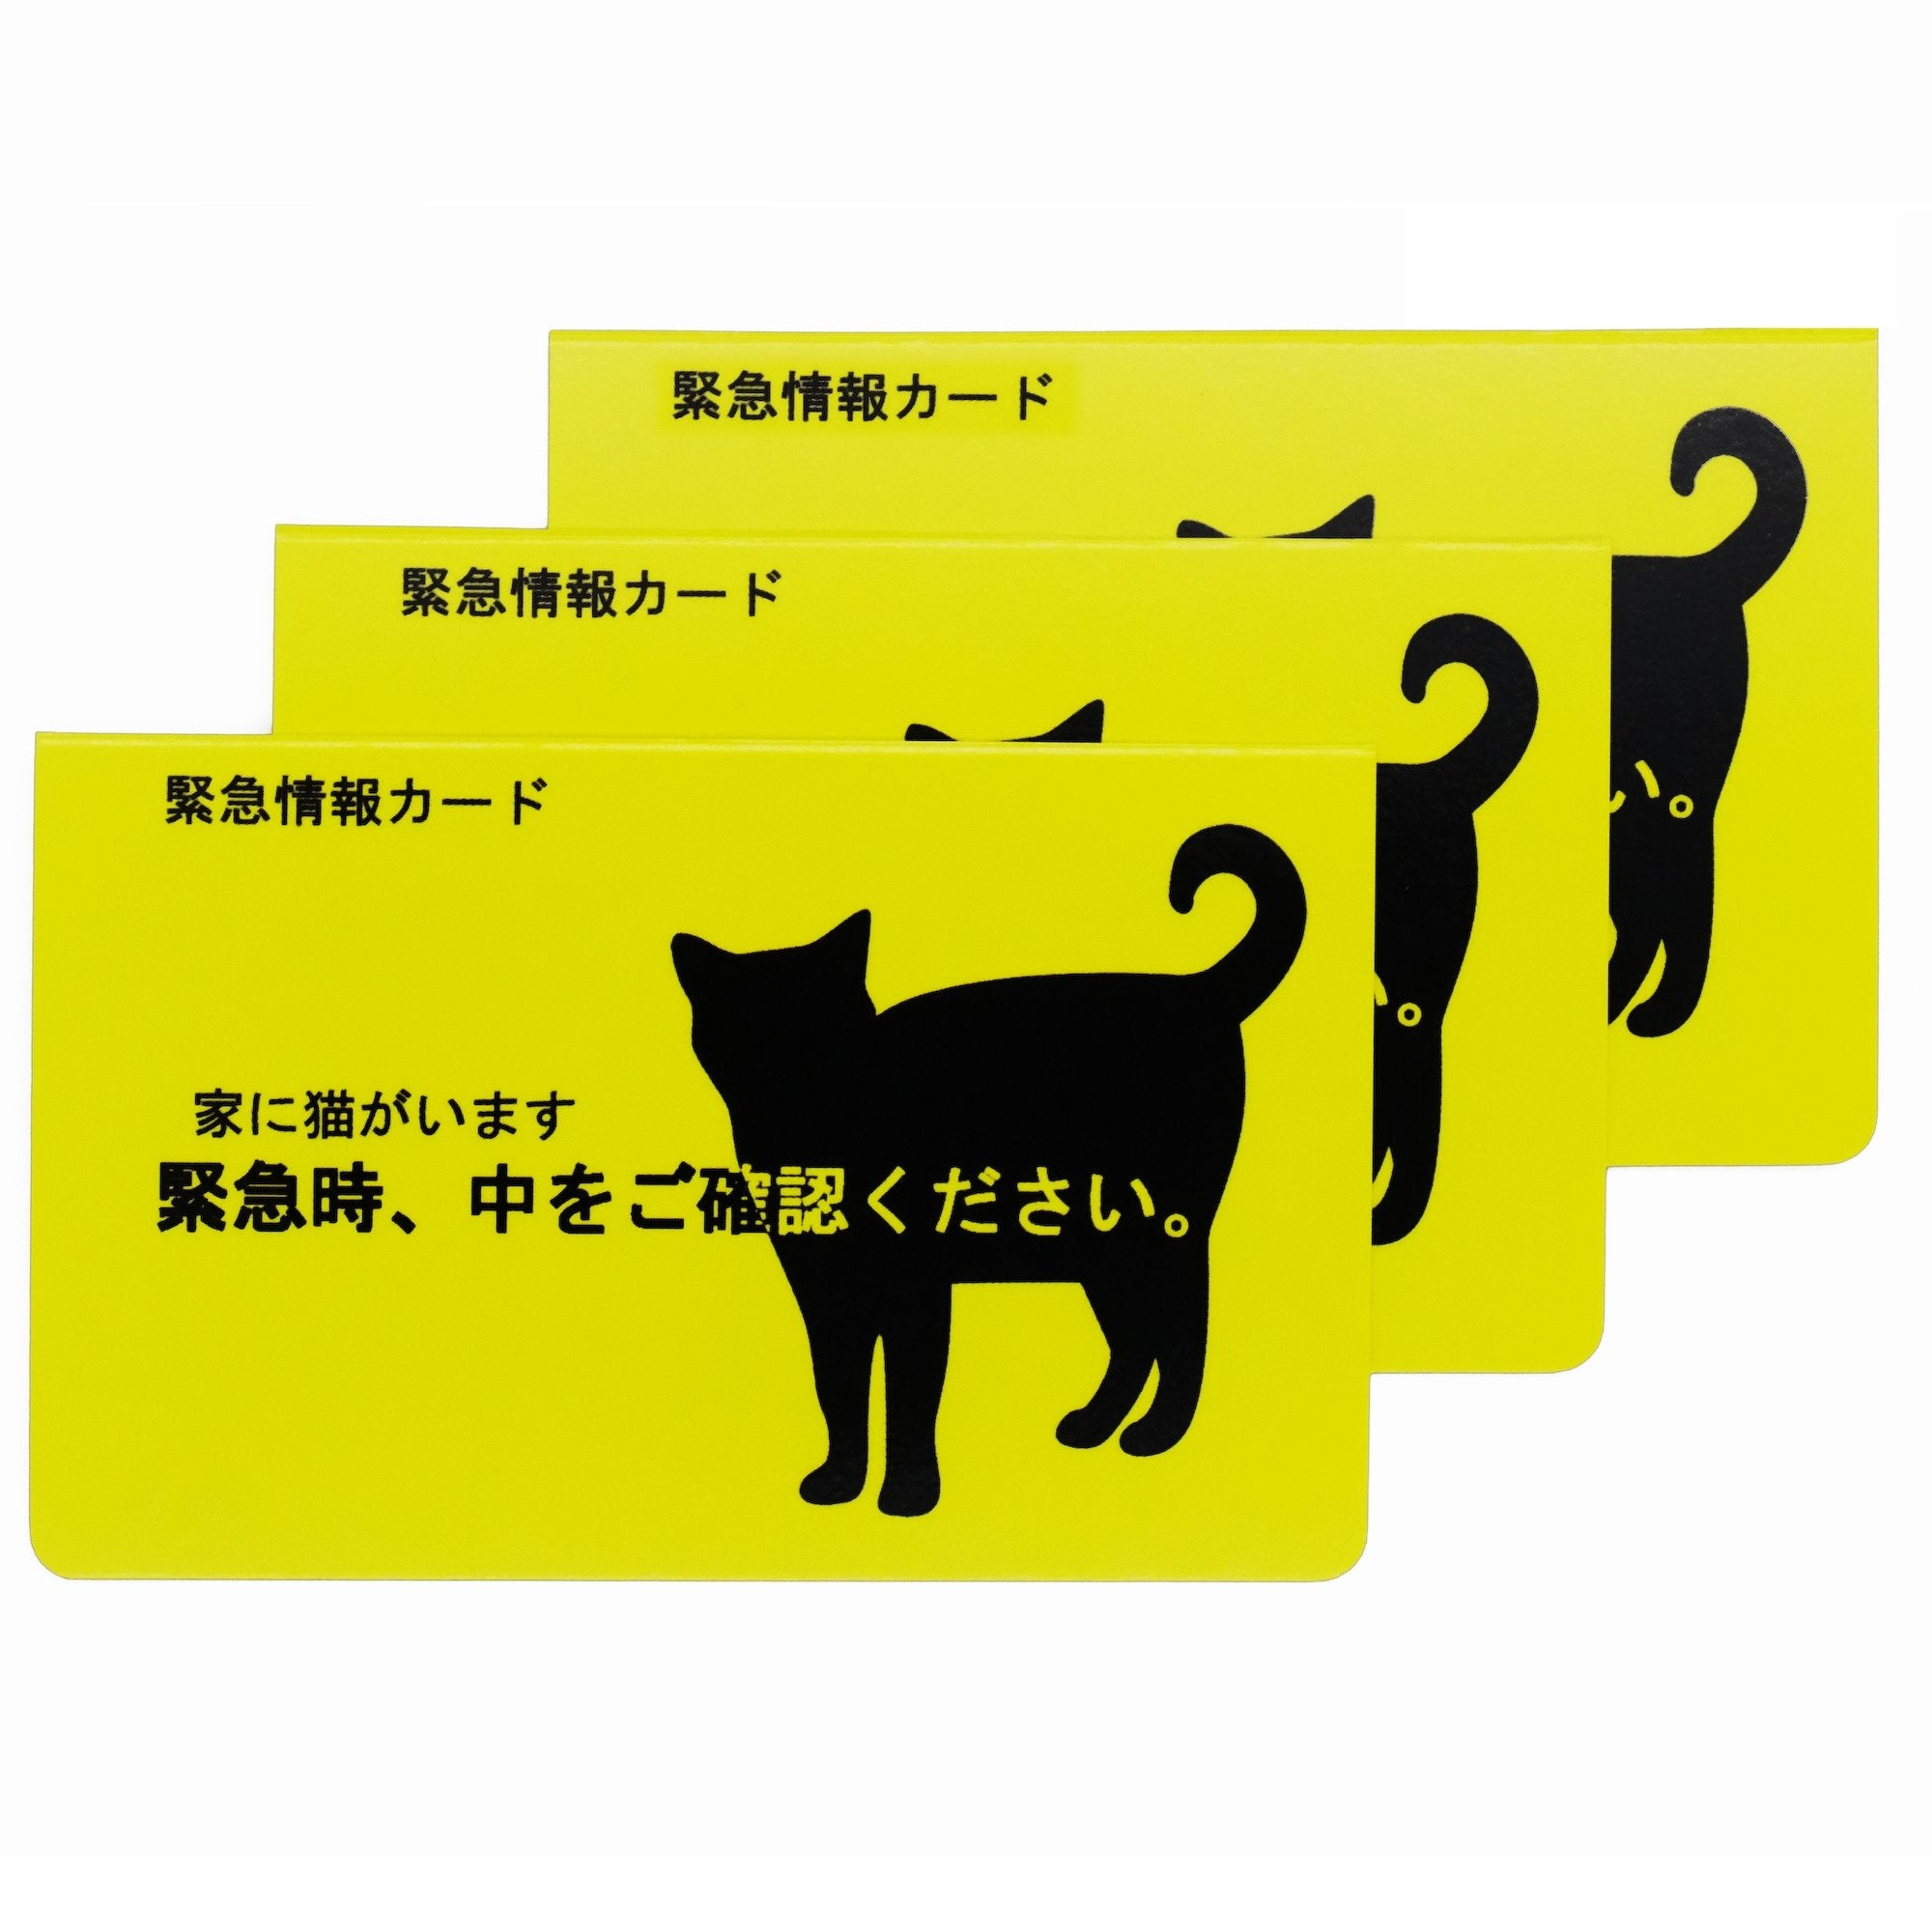 kakuo gadgets オンラインストア 家に猫がいます 緊急情報カード